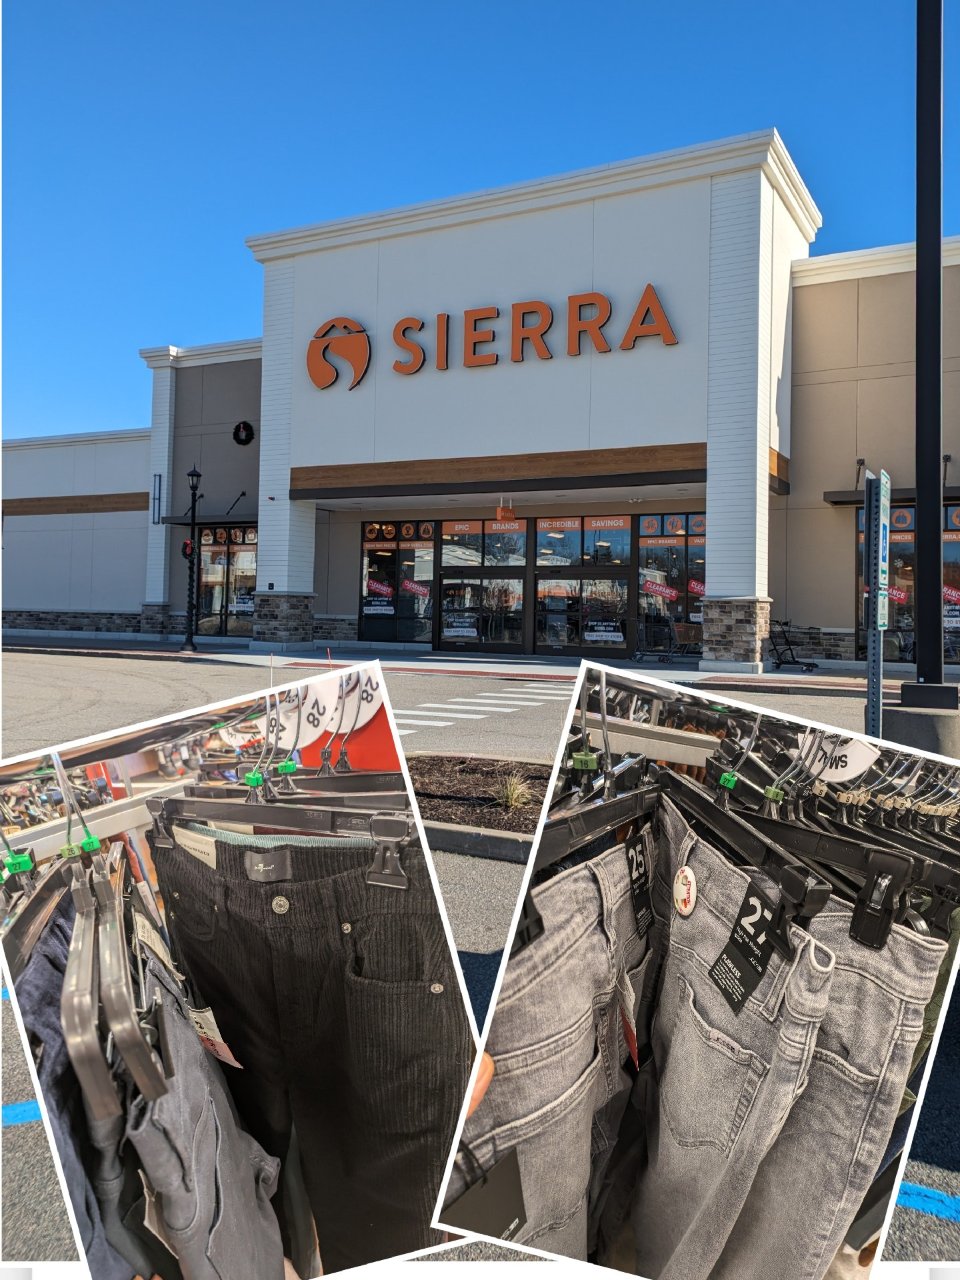 Sierra 👉 这里买牛仔裤👖不错哦🤔...